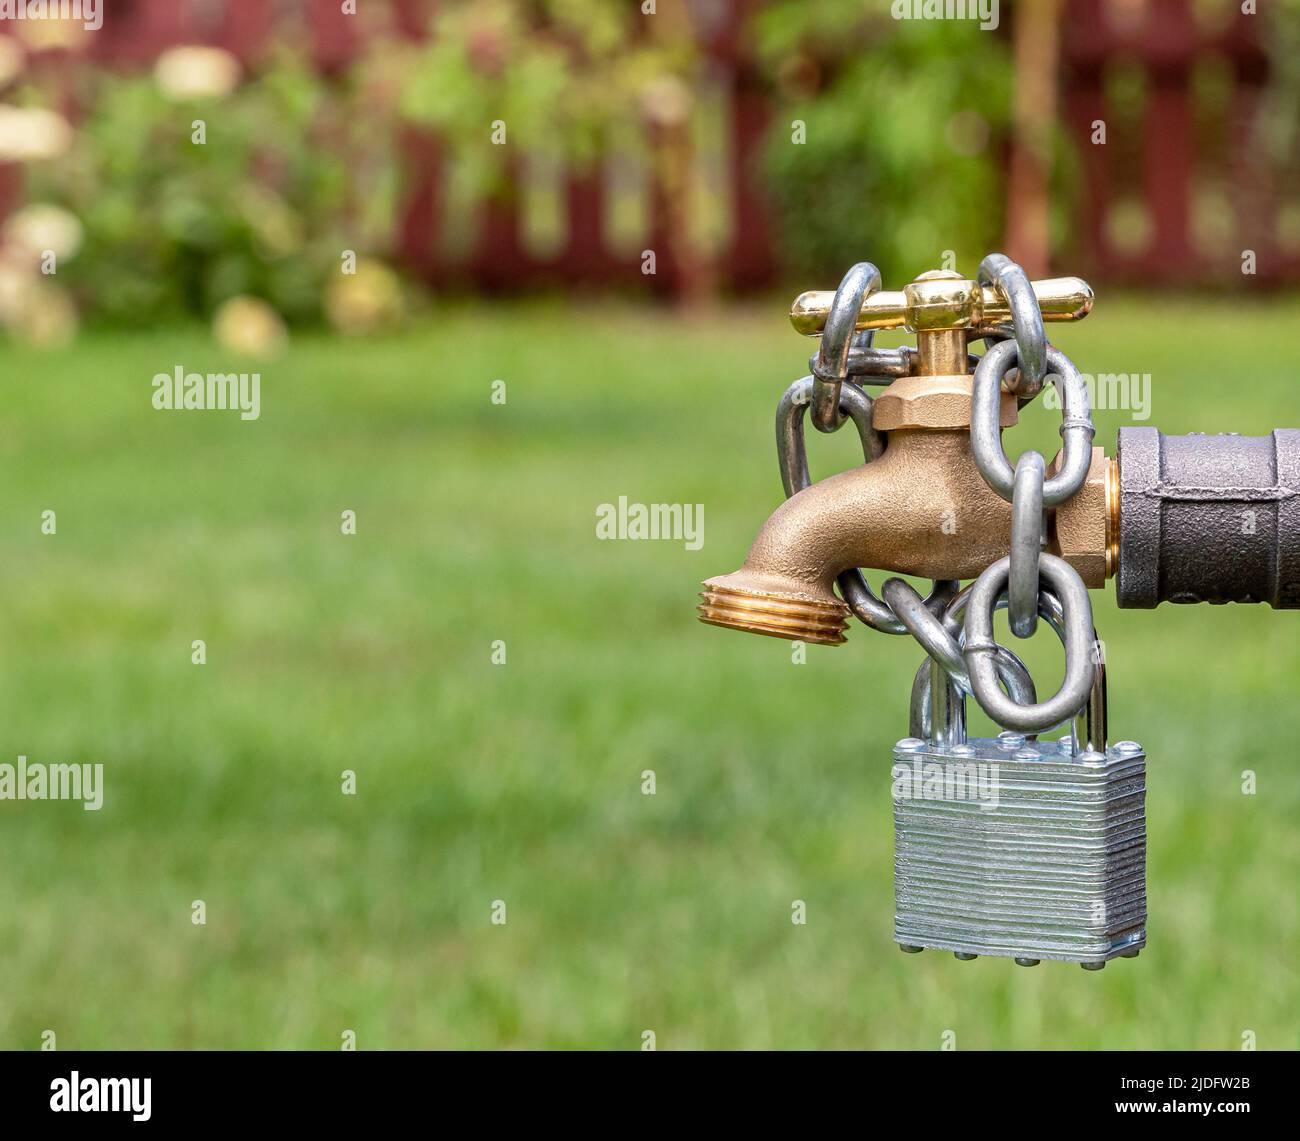 Robinet d'eau extérieur avec verrou et chaîne. Concept de restriction, d'approvisionnement et de pénurie d'eau Banque D'Images